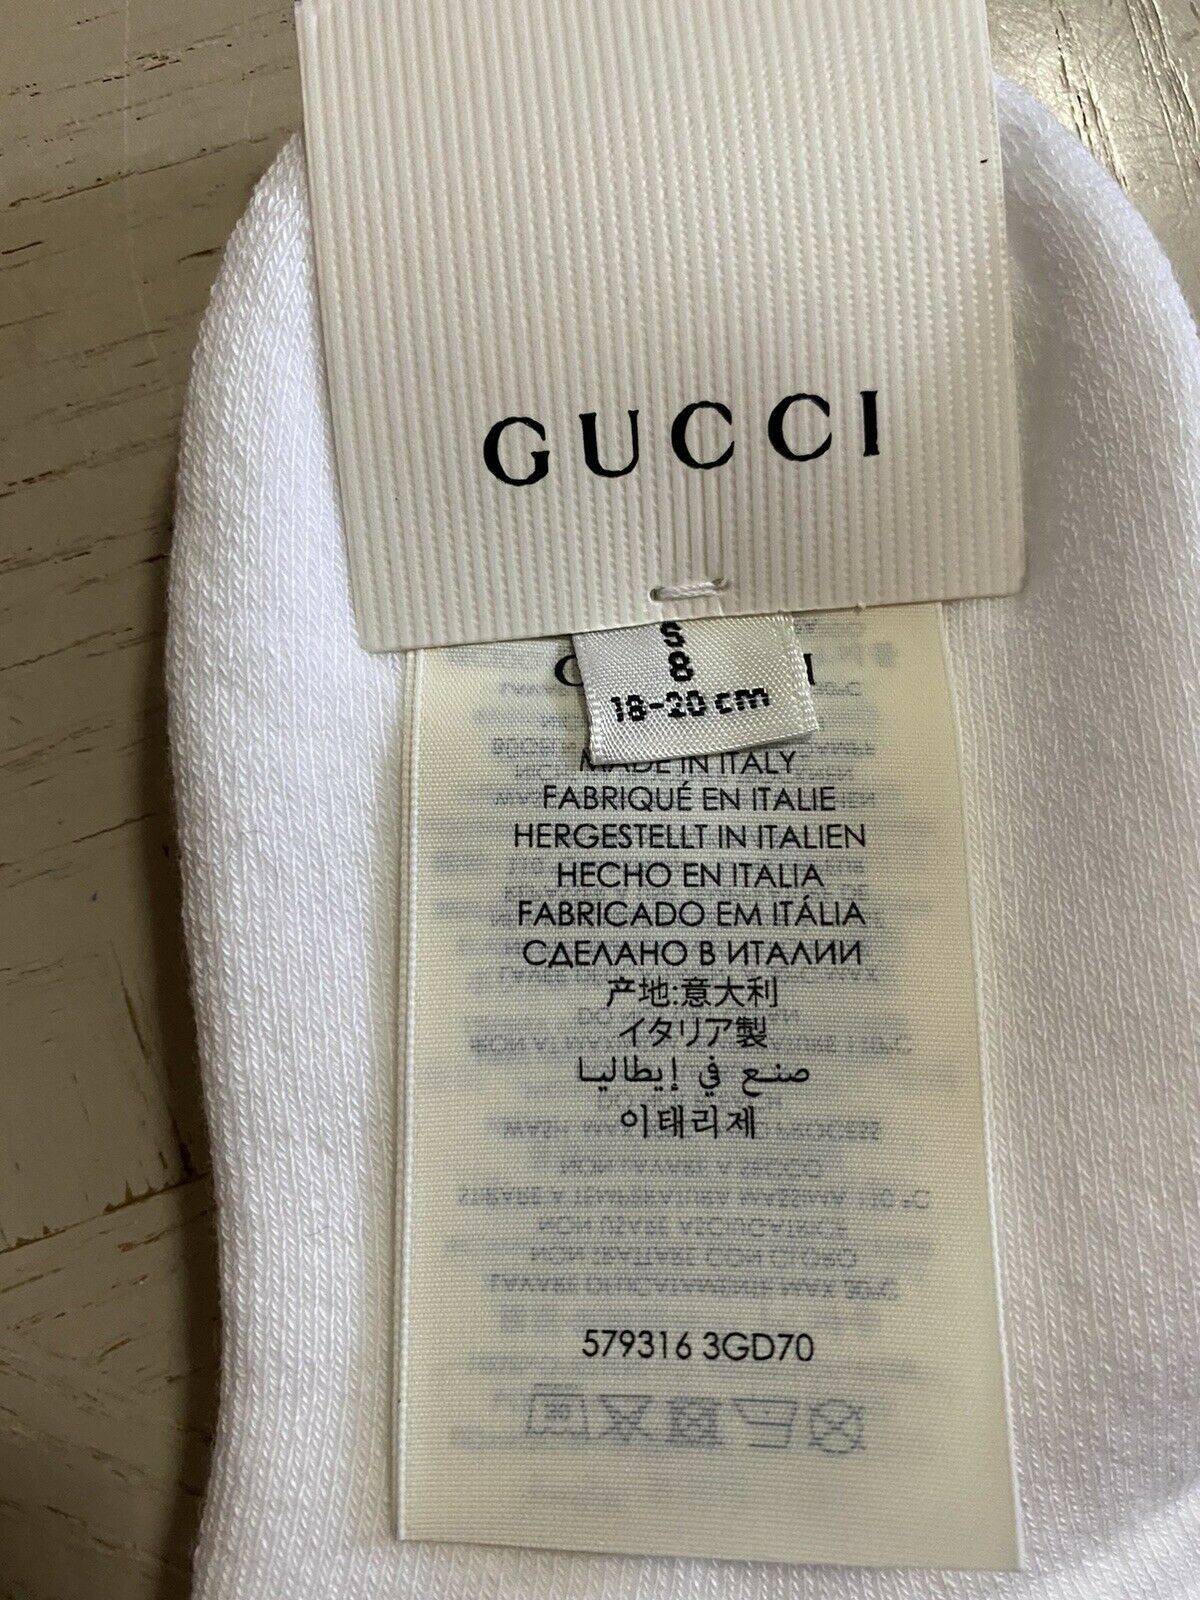 Neu mit Etikett: Gucci Herren-Baumwollsocken mit Gucci-Monogramm, Weiß, Größe S, Italien